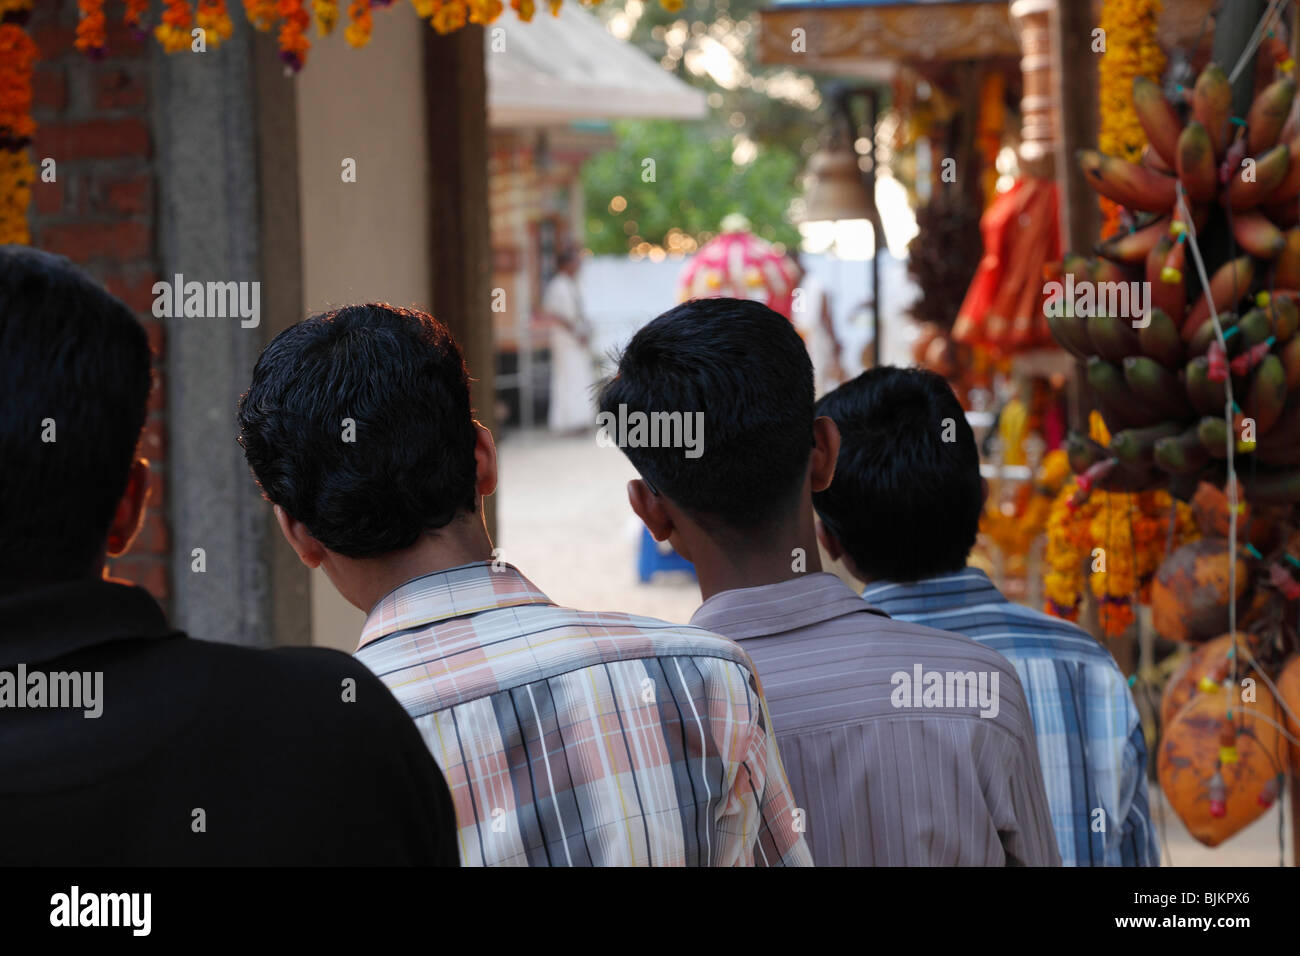 Junge Männer auf der Suche in einen Hindu-Tempel, Tempel-Festival in Pulinkudi, Kerala Zustand, Indien, Asien Stockfoto